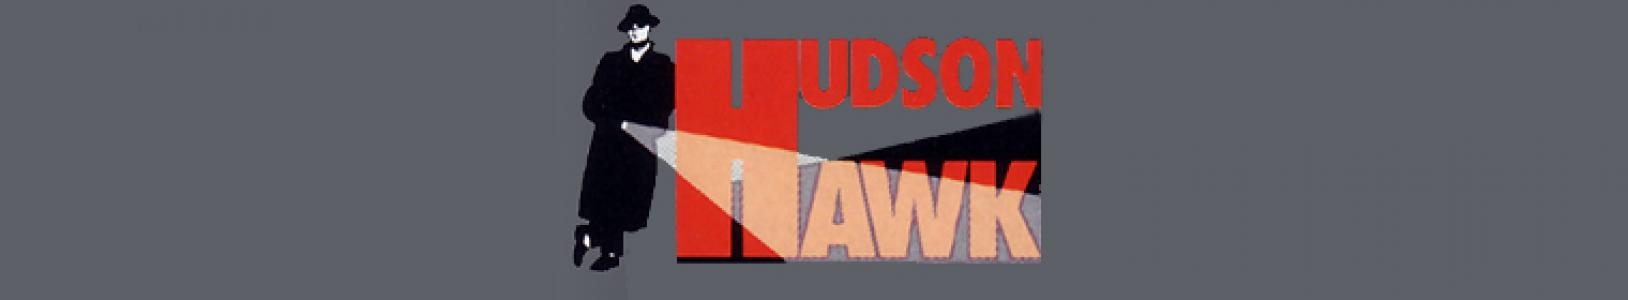 Hudson Hawk banner